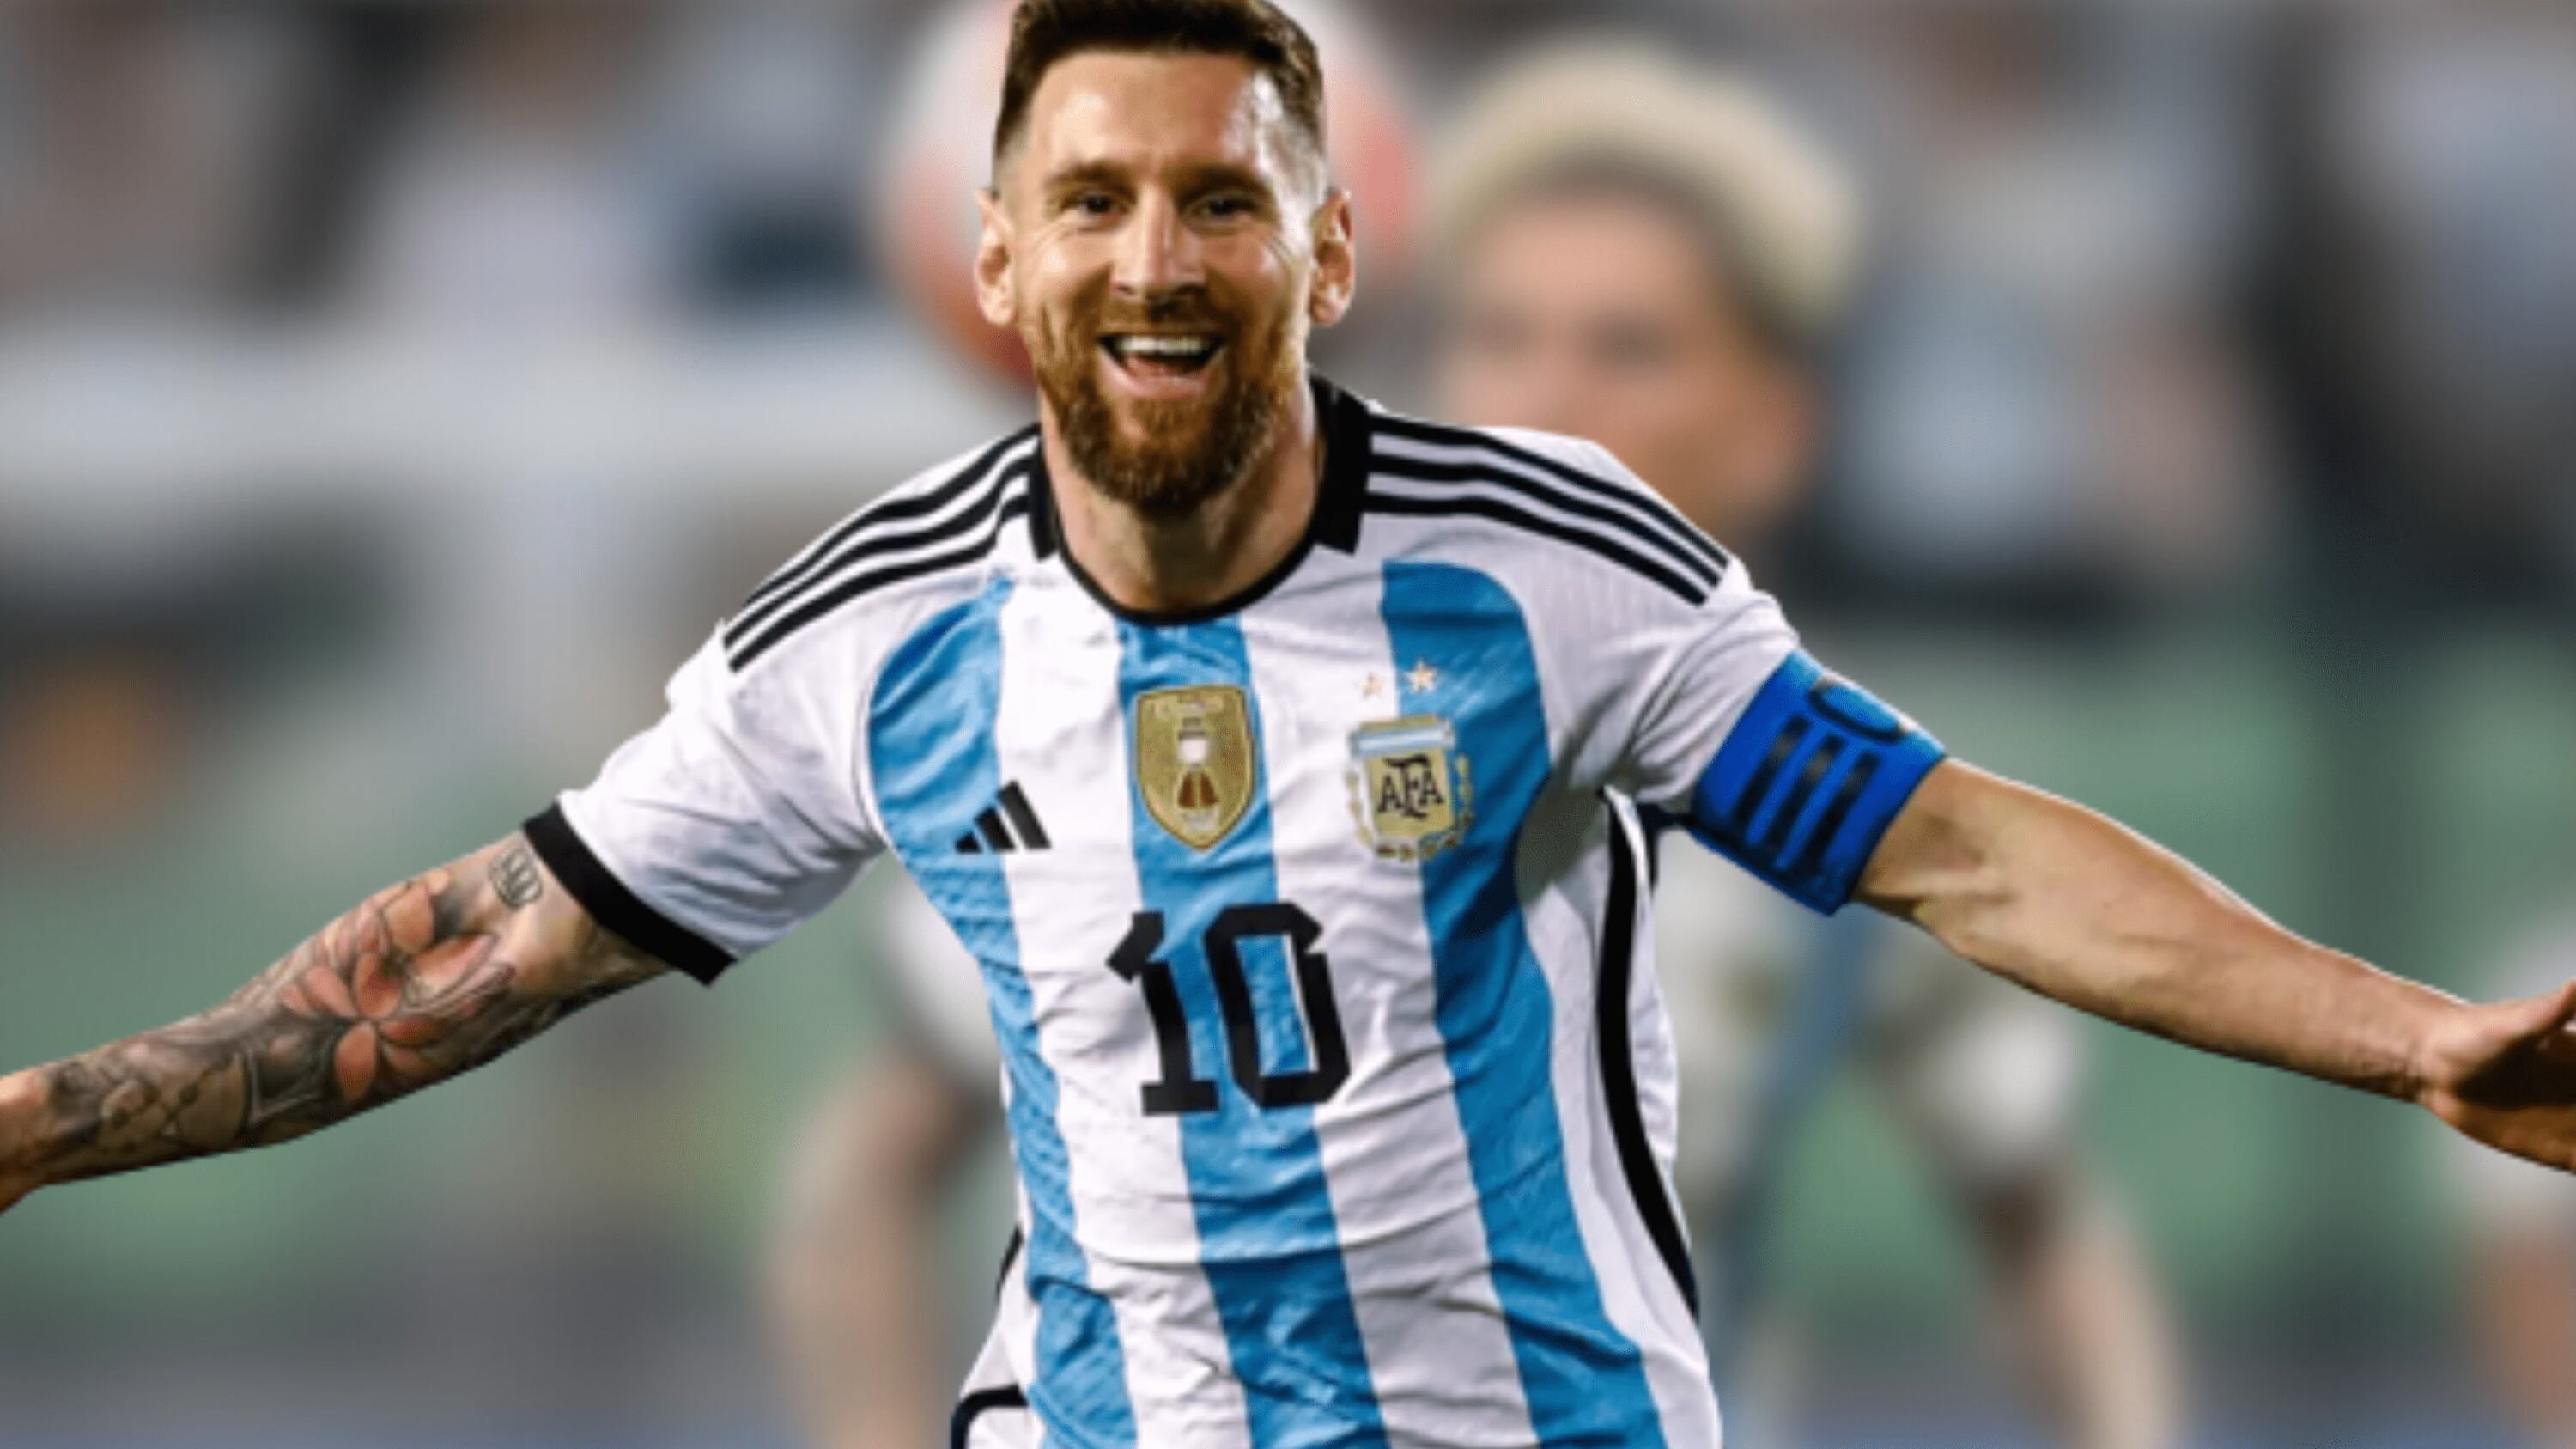 Como Messi, lo quería España pero se le escapó y fue blindado por Argentina